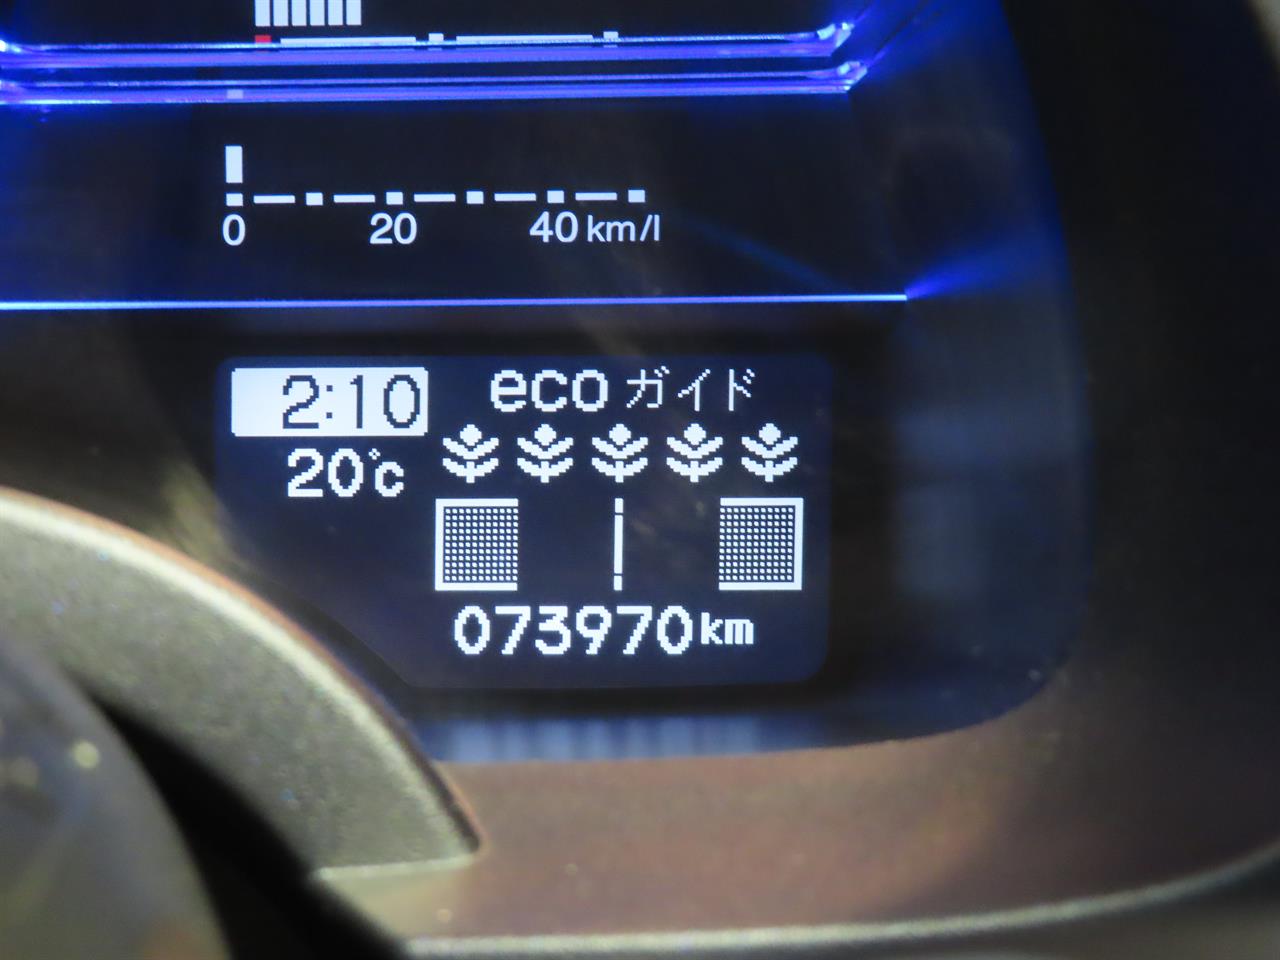 2010 Honda CR-Z